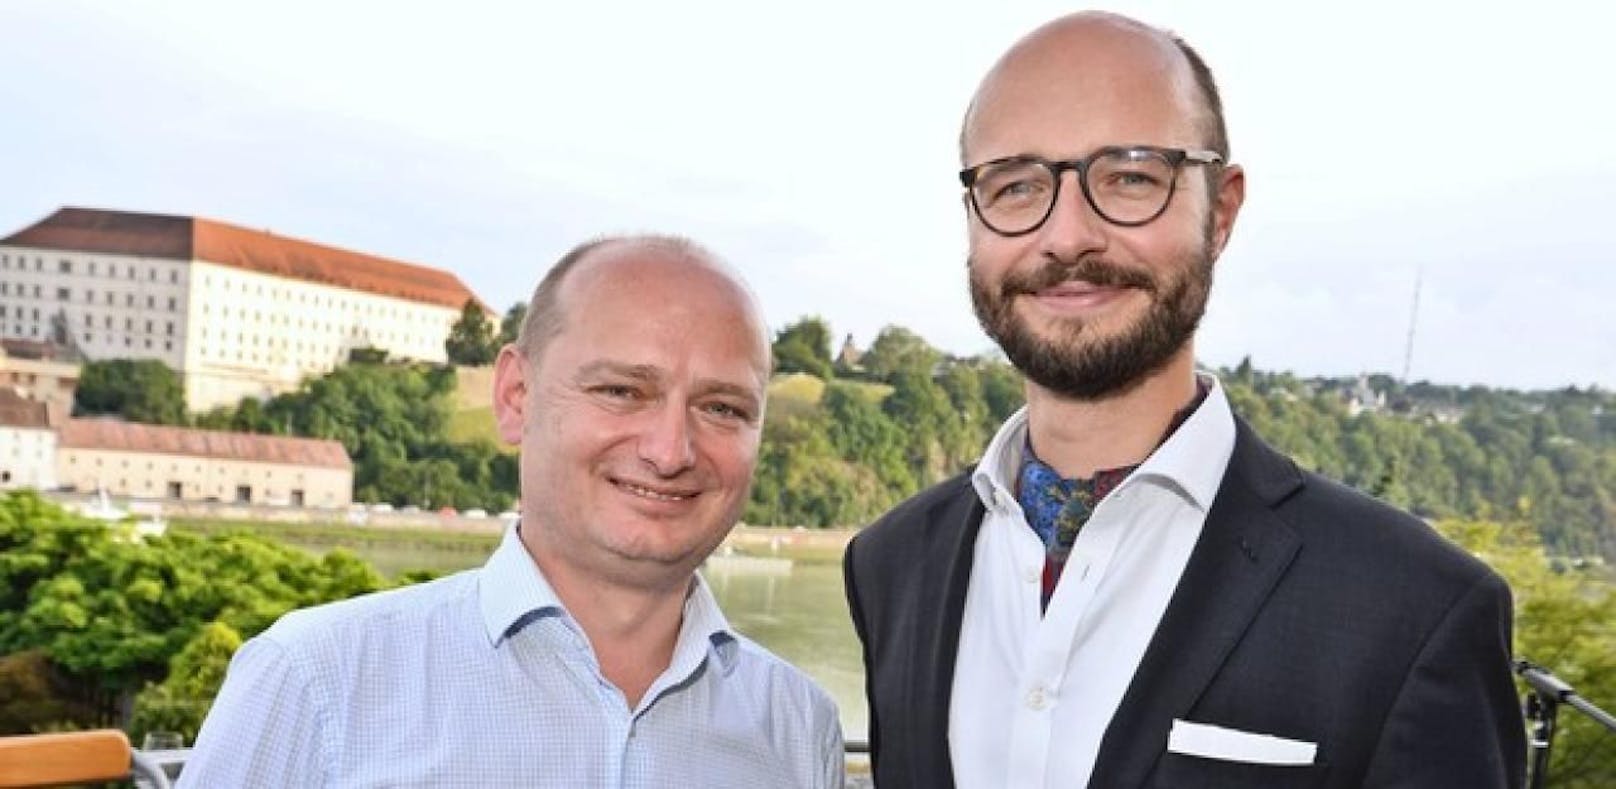 Detlef Wimmer trat als Chef der Linzer FPÖ an, ihm folgte Stadtrat Markus Hein. 